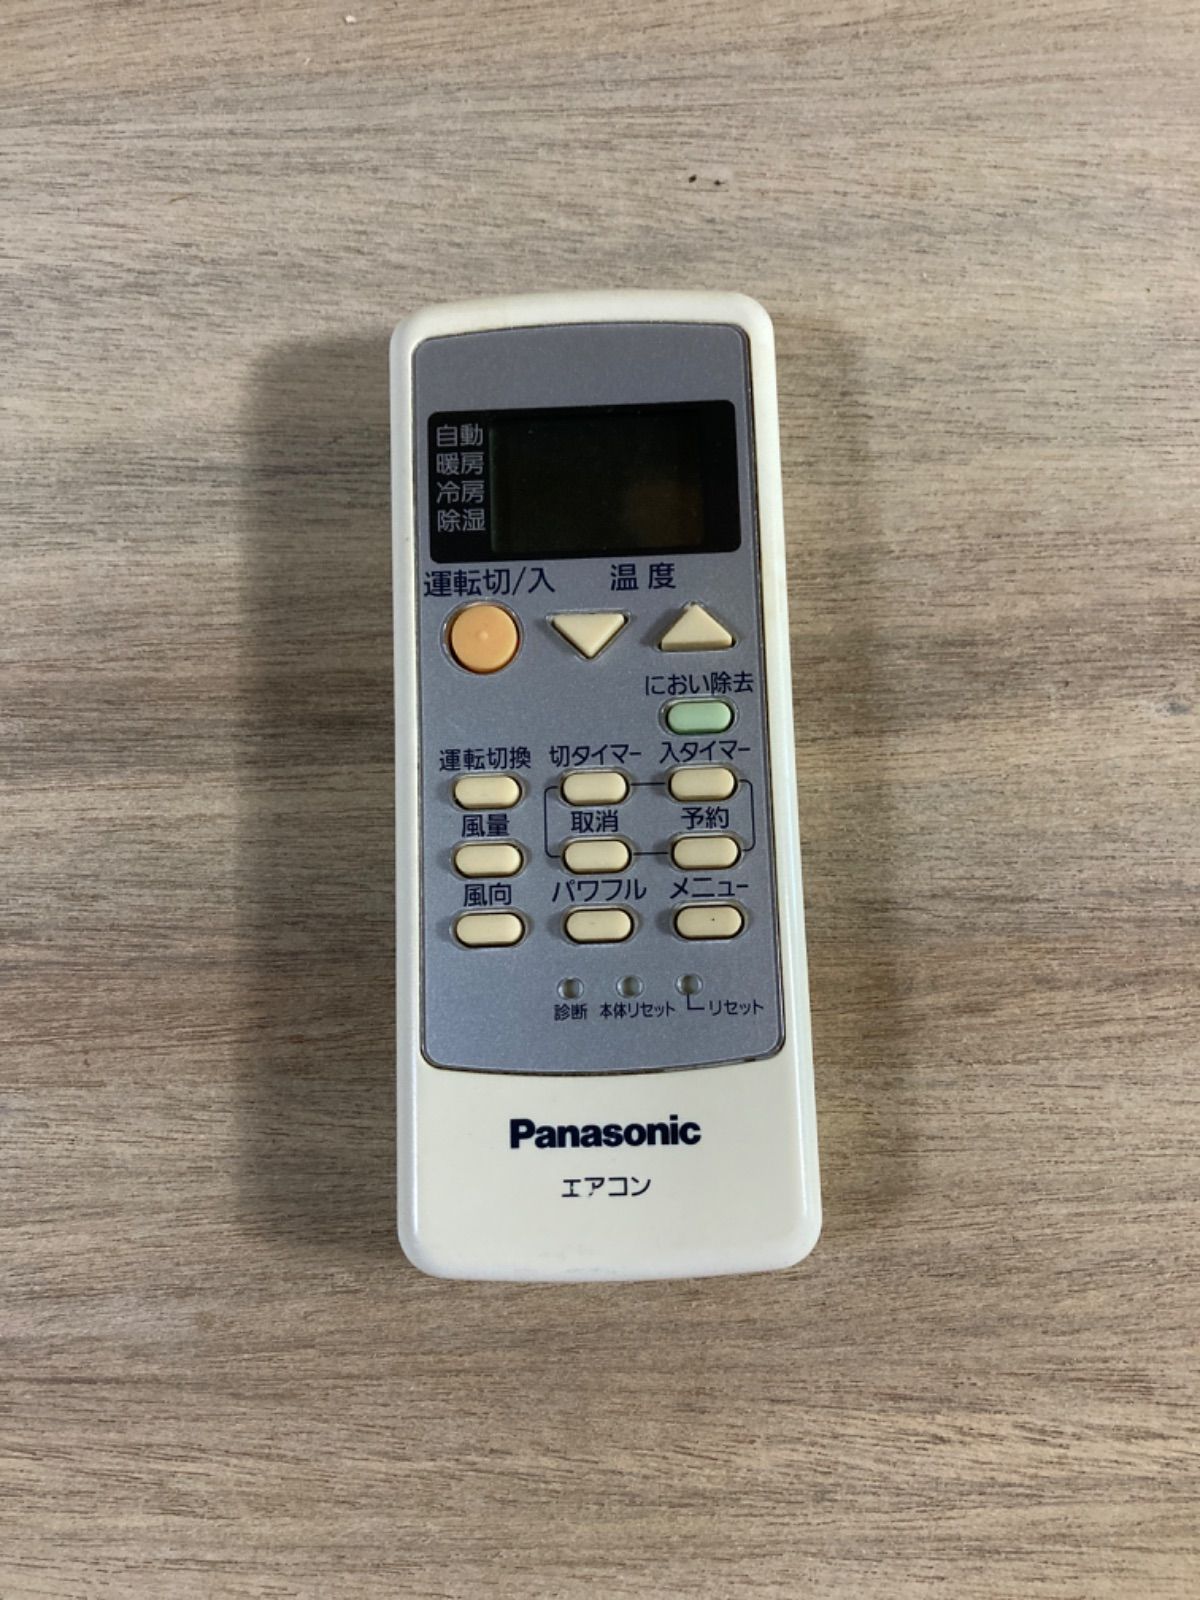 Panasonic パナソニック リモコン A75C3286 - エアコン